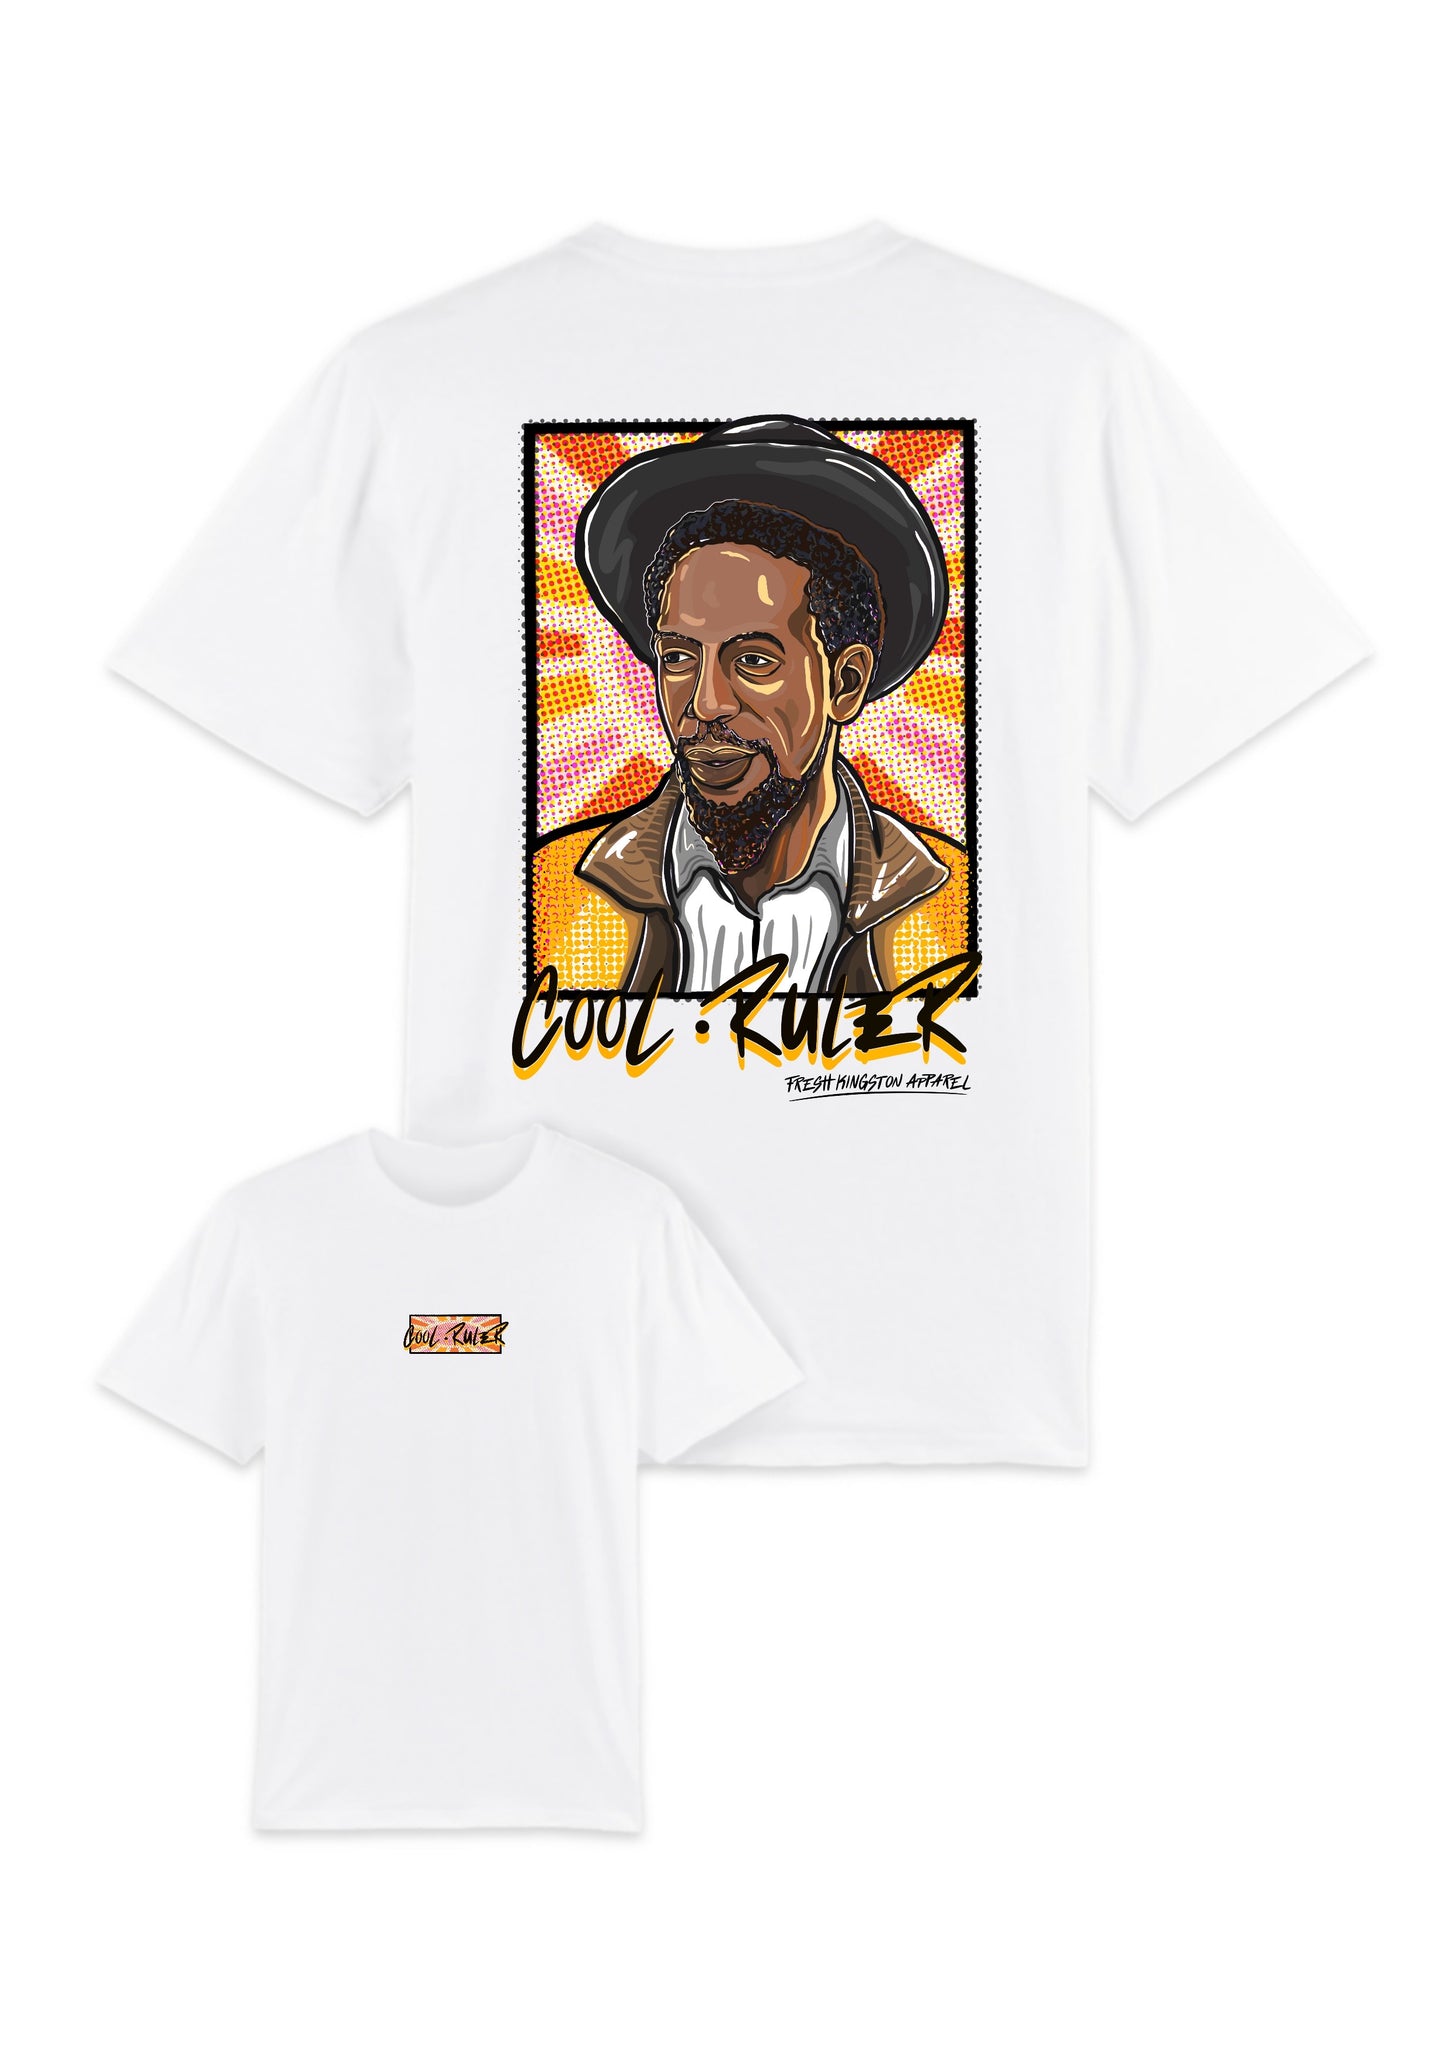 T-Shirt "Cool Ruler"